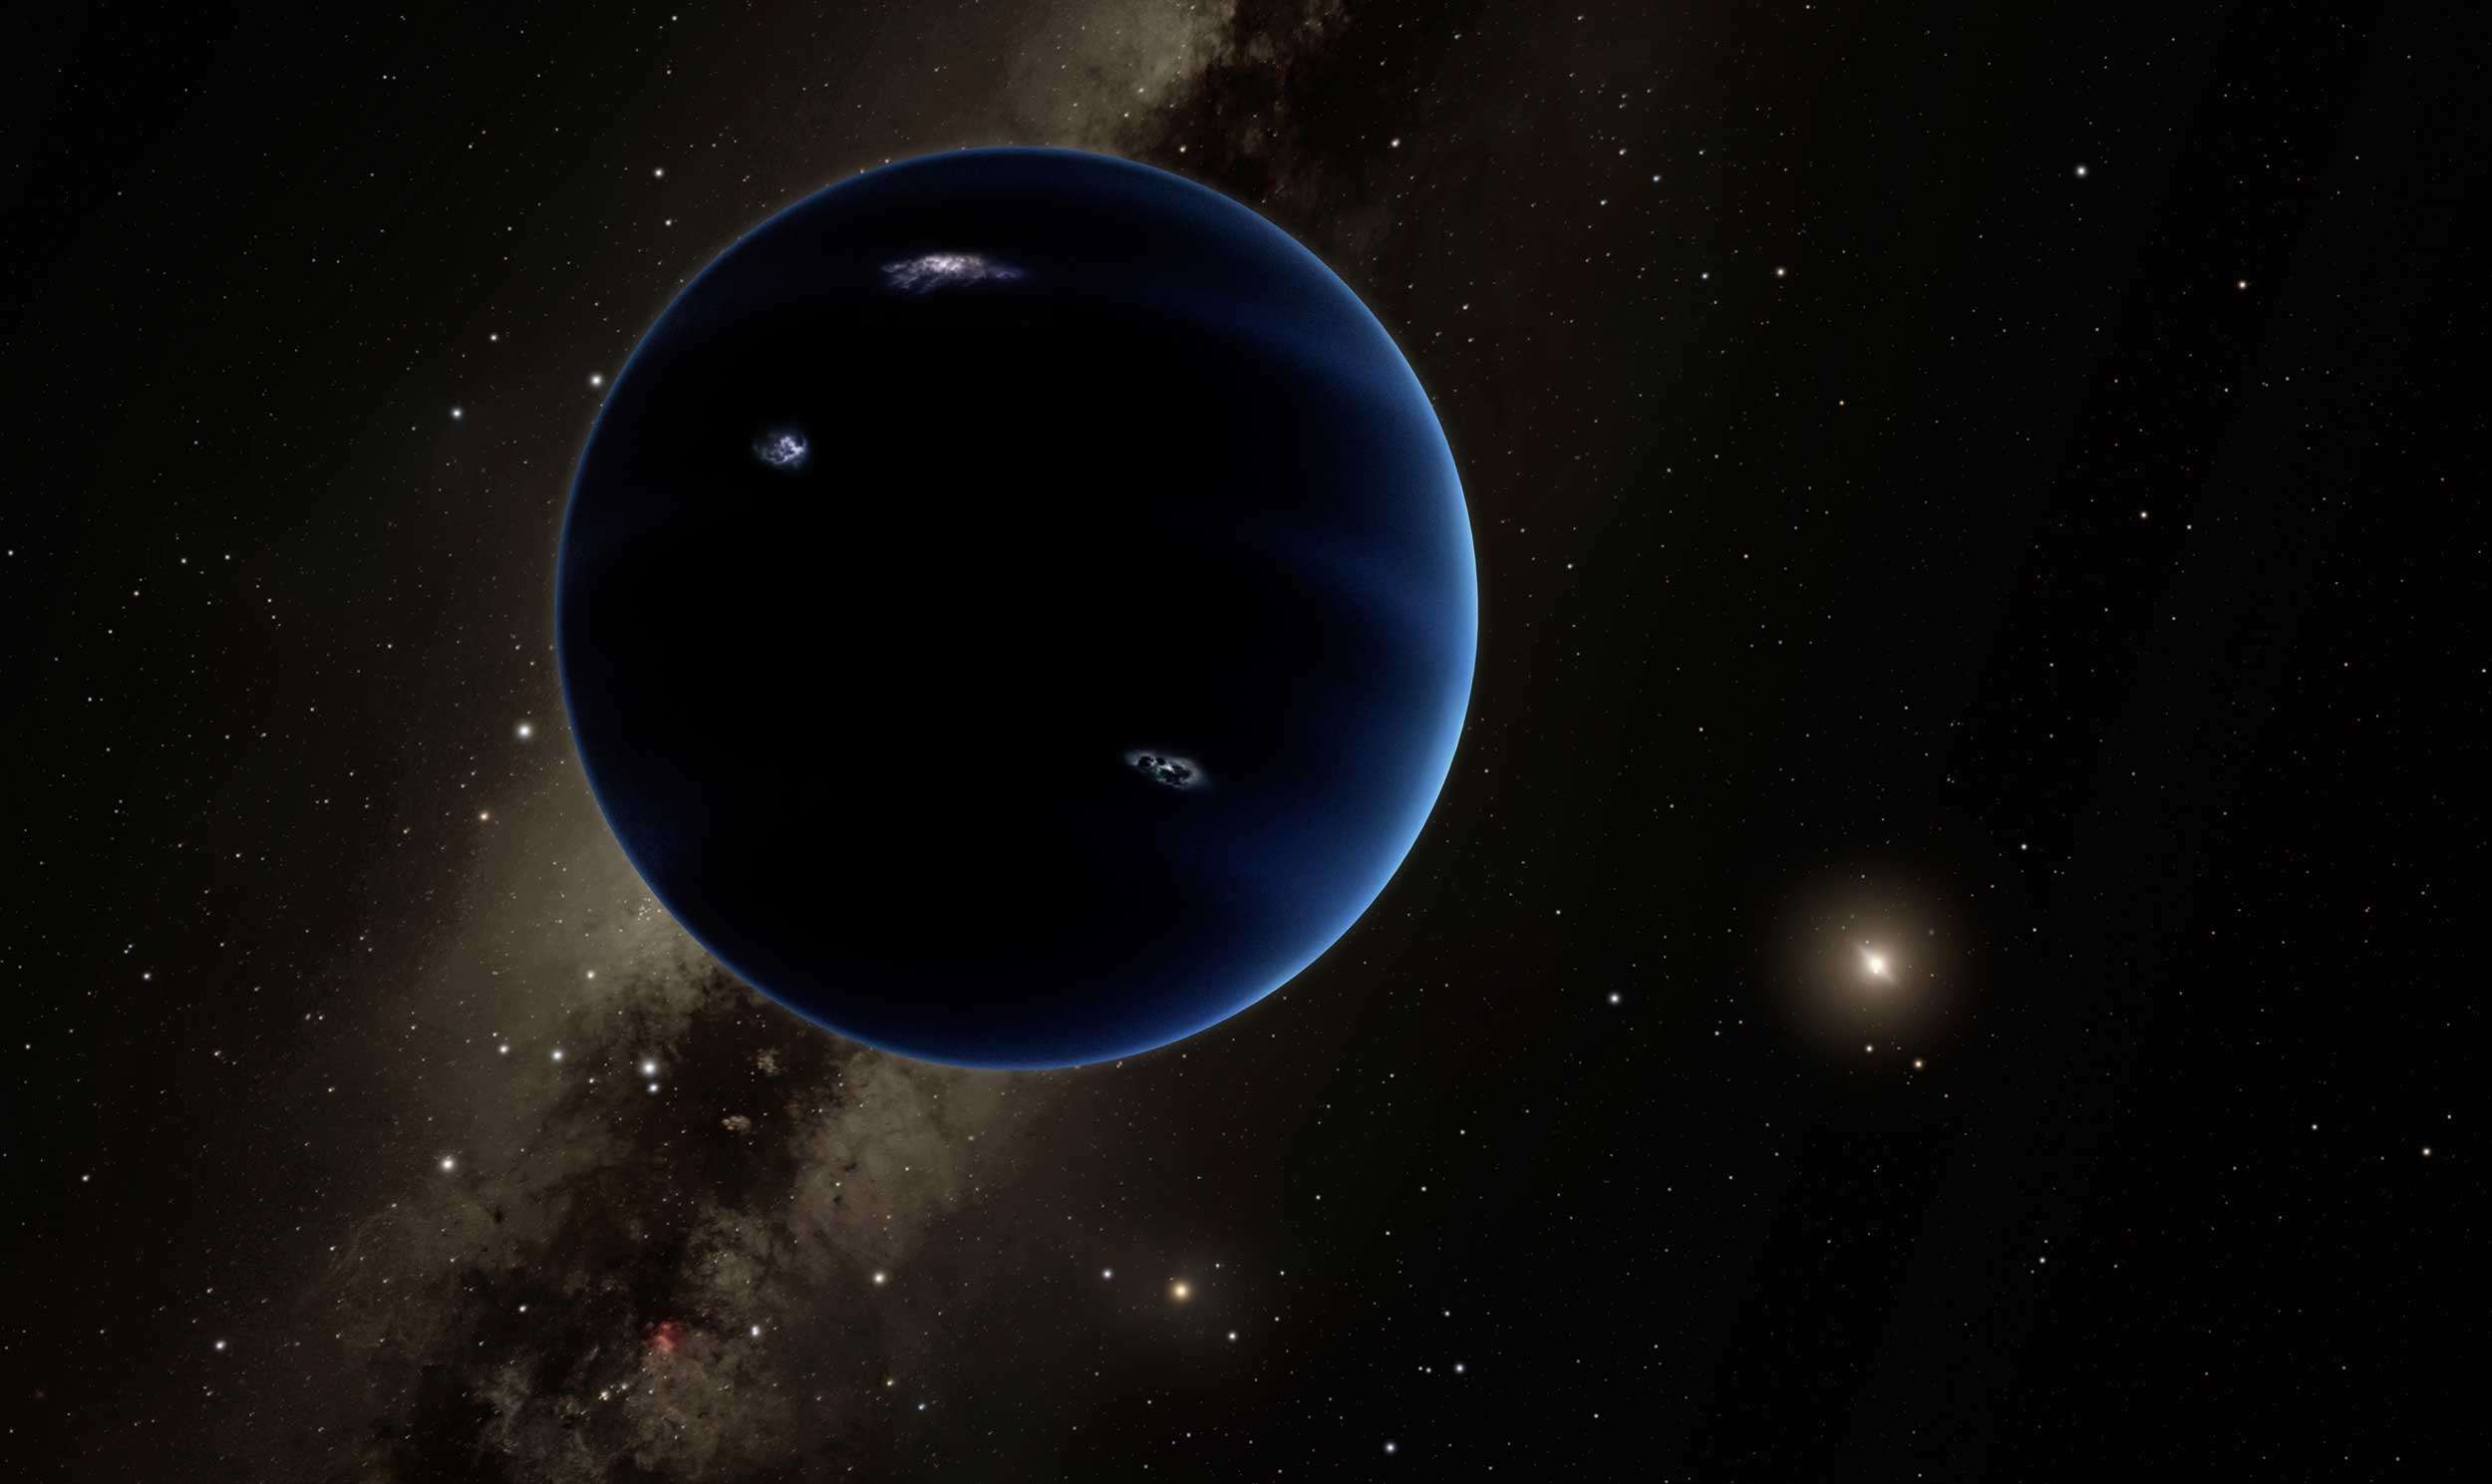 Art depicting a hypothetical Planet Nine orbiting the Sun far beyond Neptune. Credit: NASA/JPL-Caltech / Robert Hurt